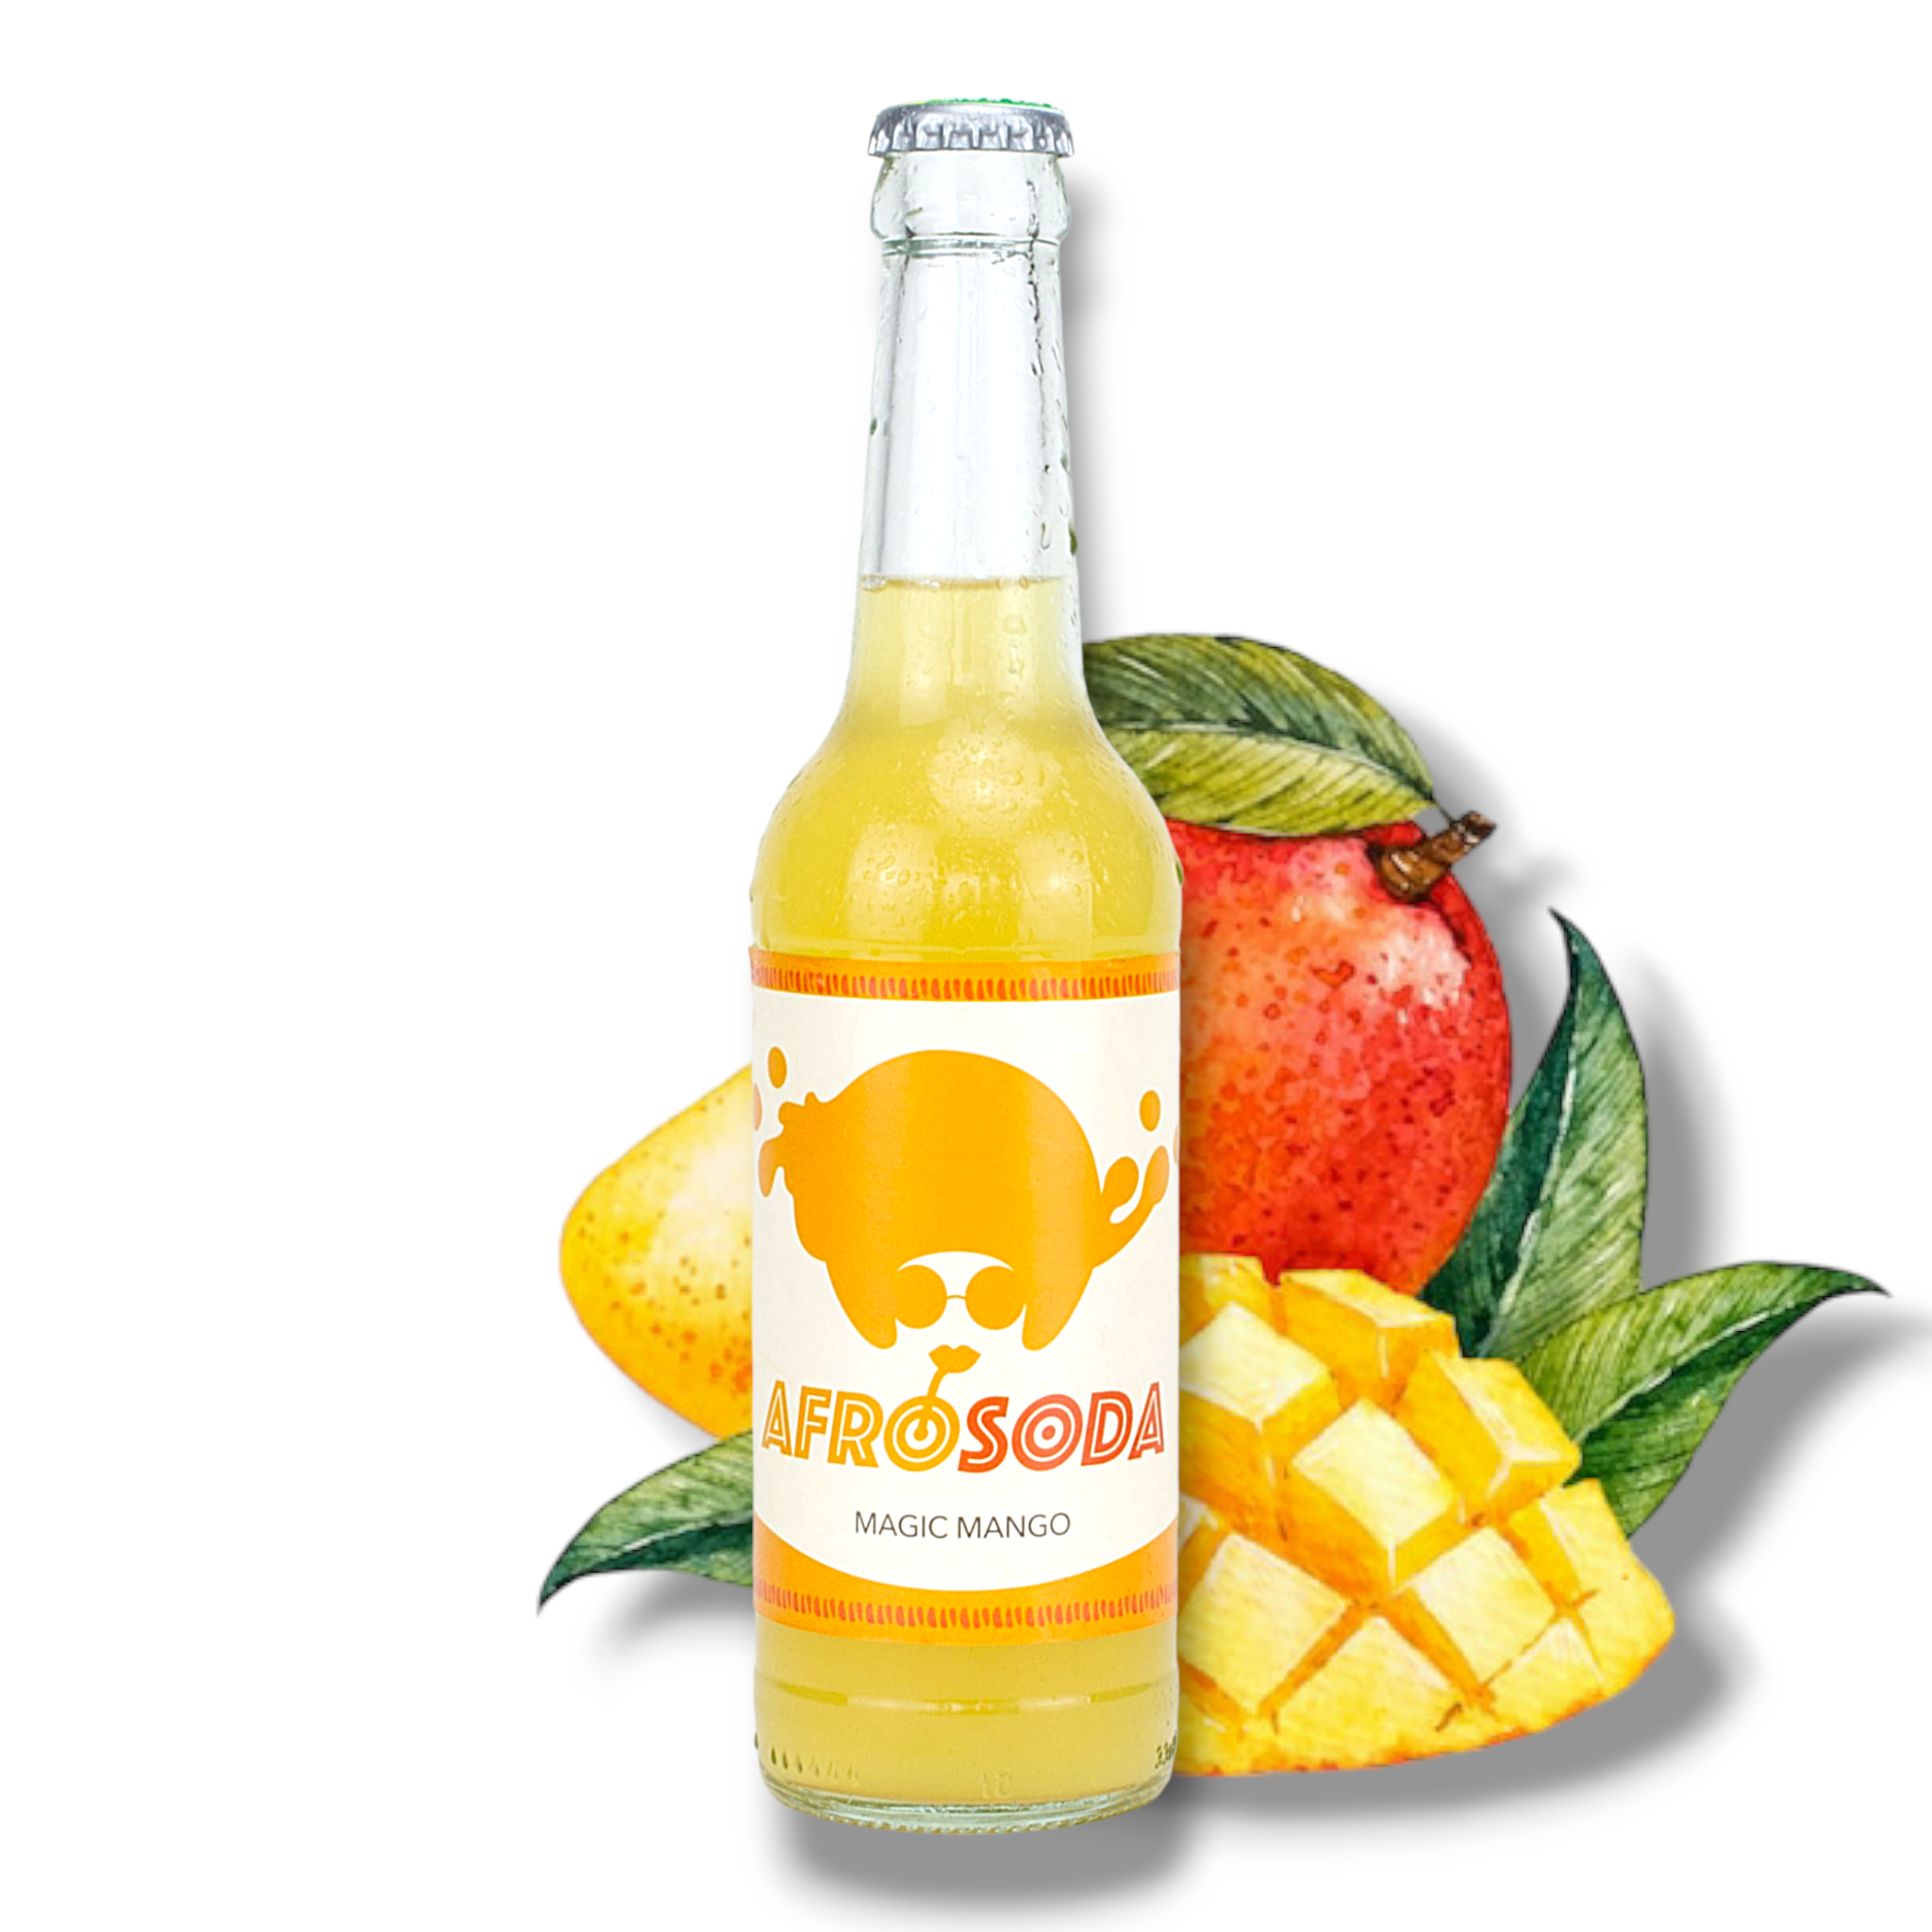 Neu! Afrosoda Magic Mango 0,33l - Taste The Beat - Erfrischungsgetränk mit Mangogeschmack